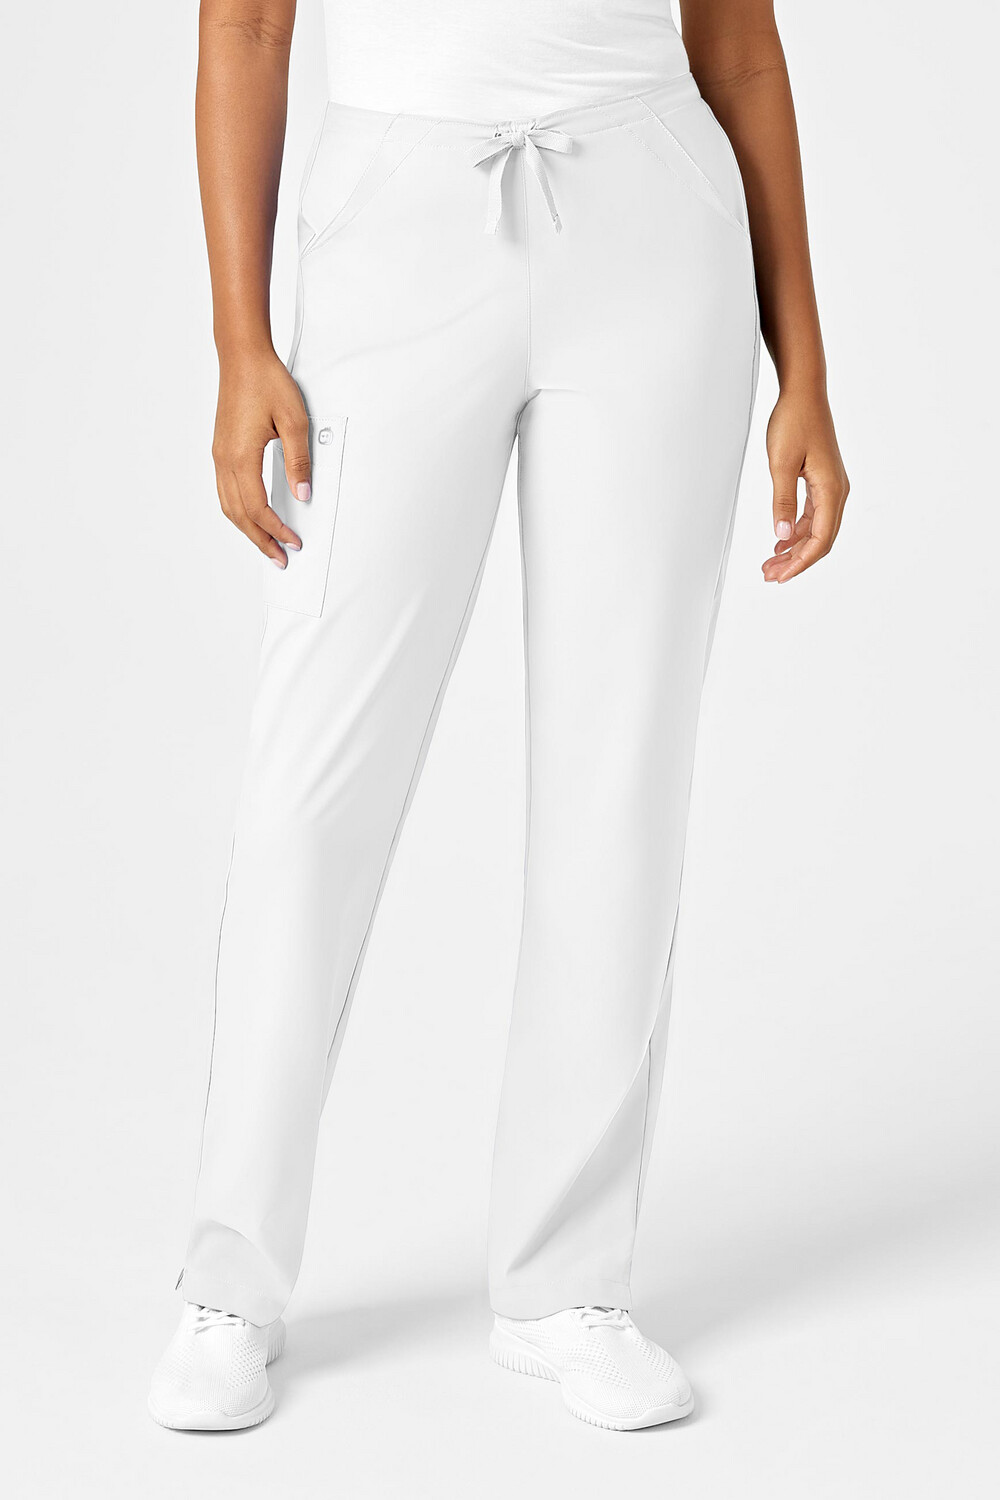 Pantalone donna 5255 white